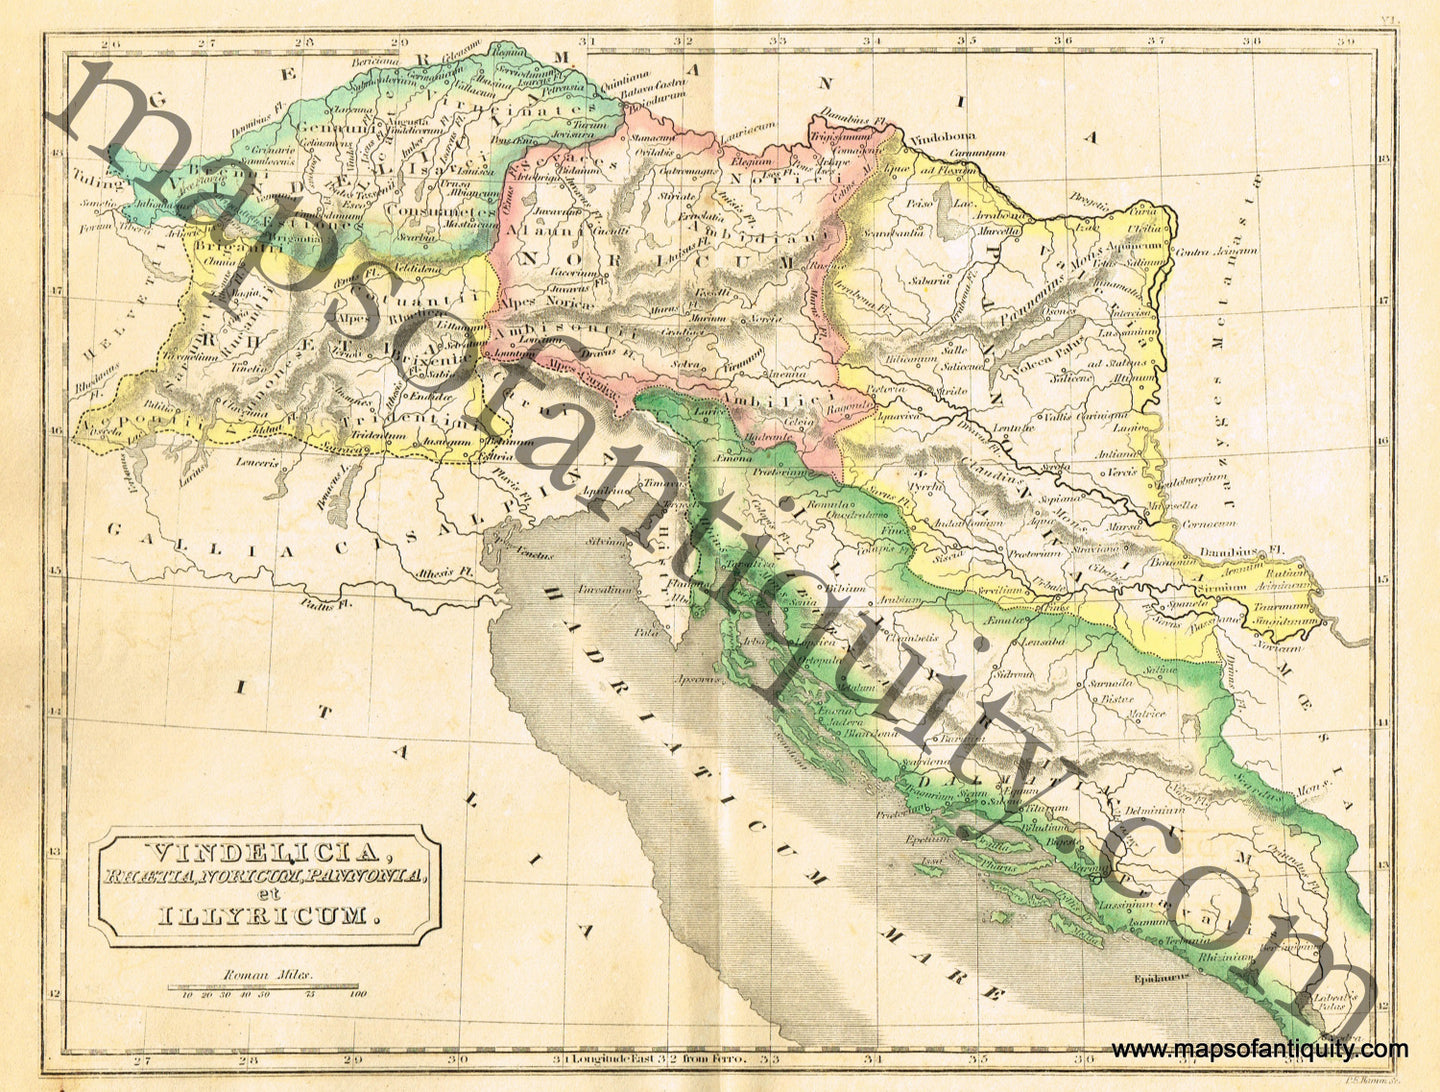 Antique-Hand-Colored-Map-Vindelicia-Rhaetia-Noricum-Pannonia-et-Illyricum-Europe-Ancient-World-Austria-Switzerland-Greece-&-the-Balkans-1838-Butler-Maps-Of-Antiquity